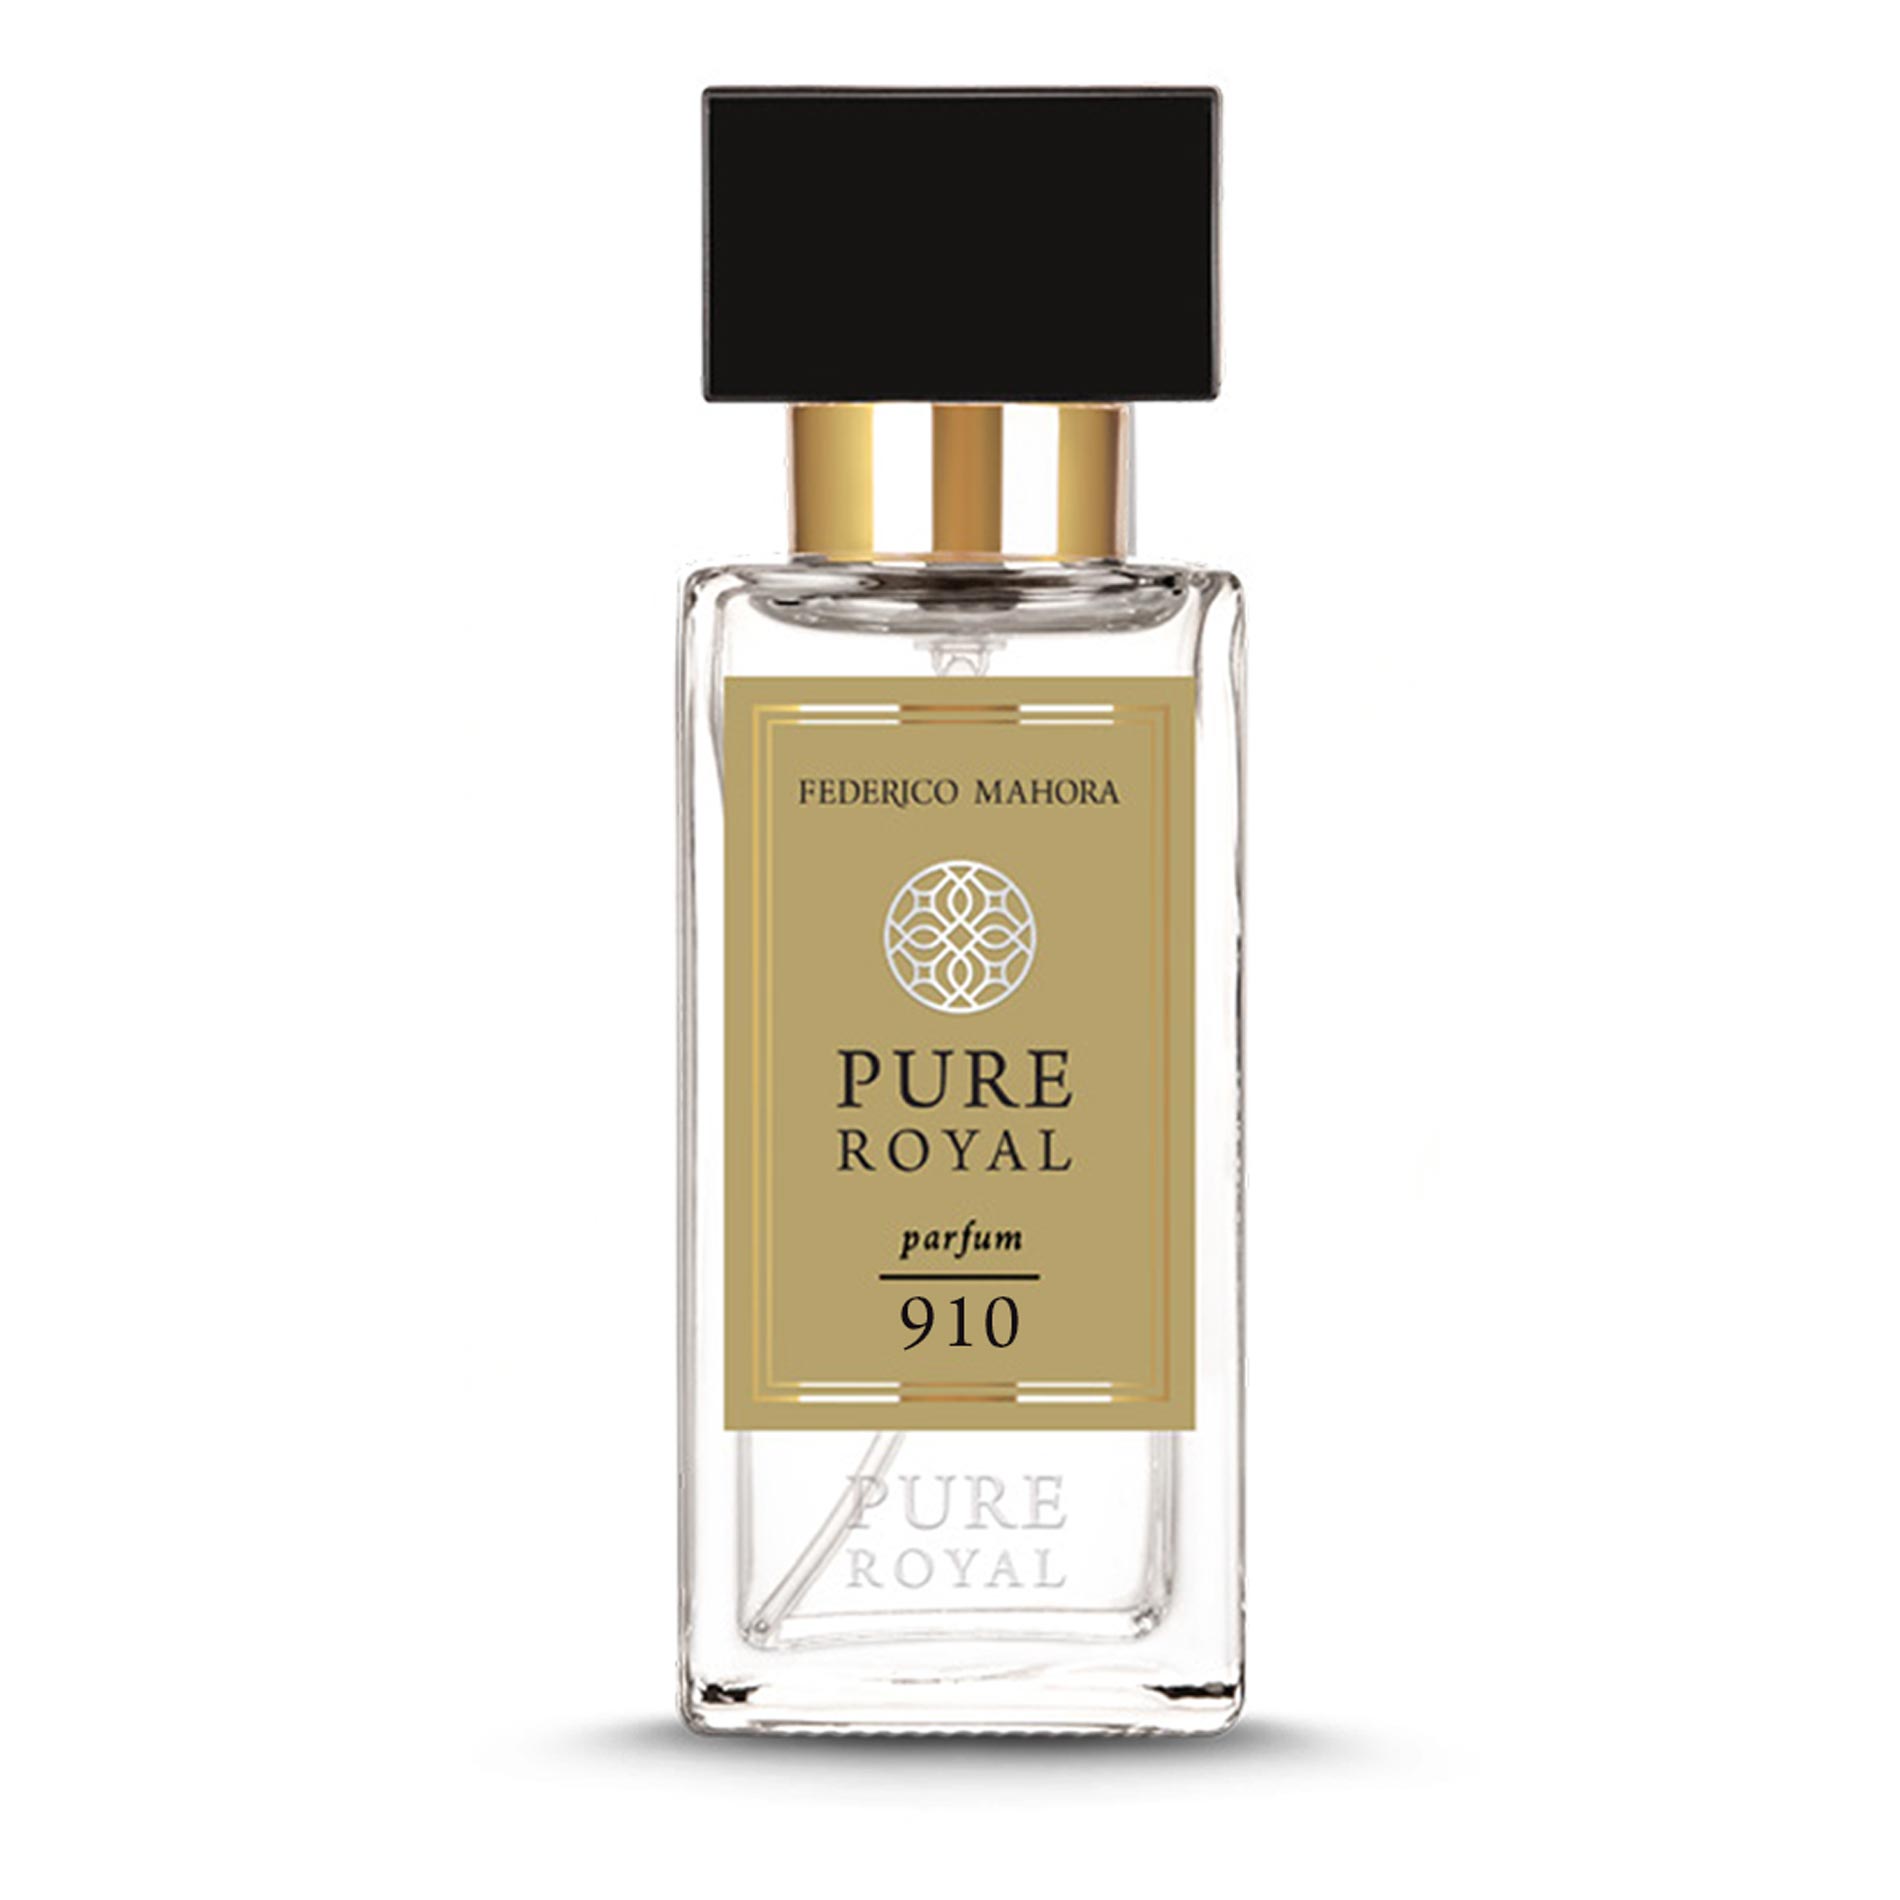 PURE ROYAL Parfum 910 Parfum